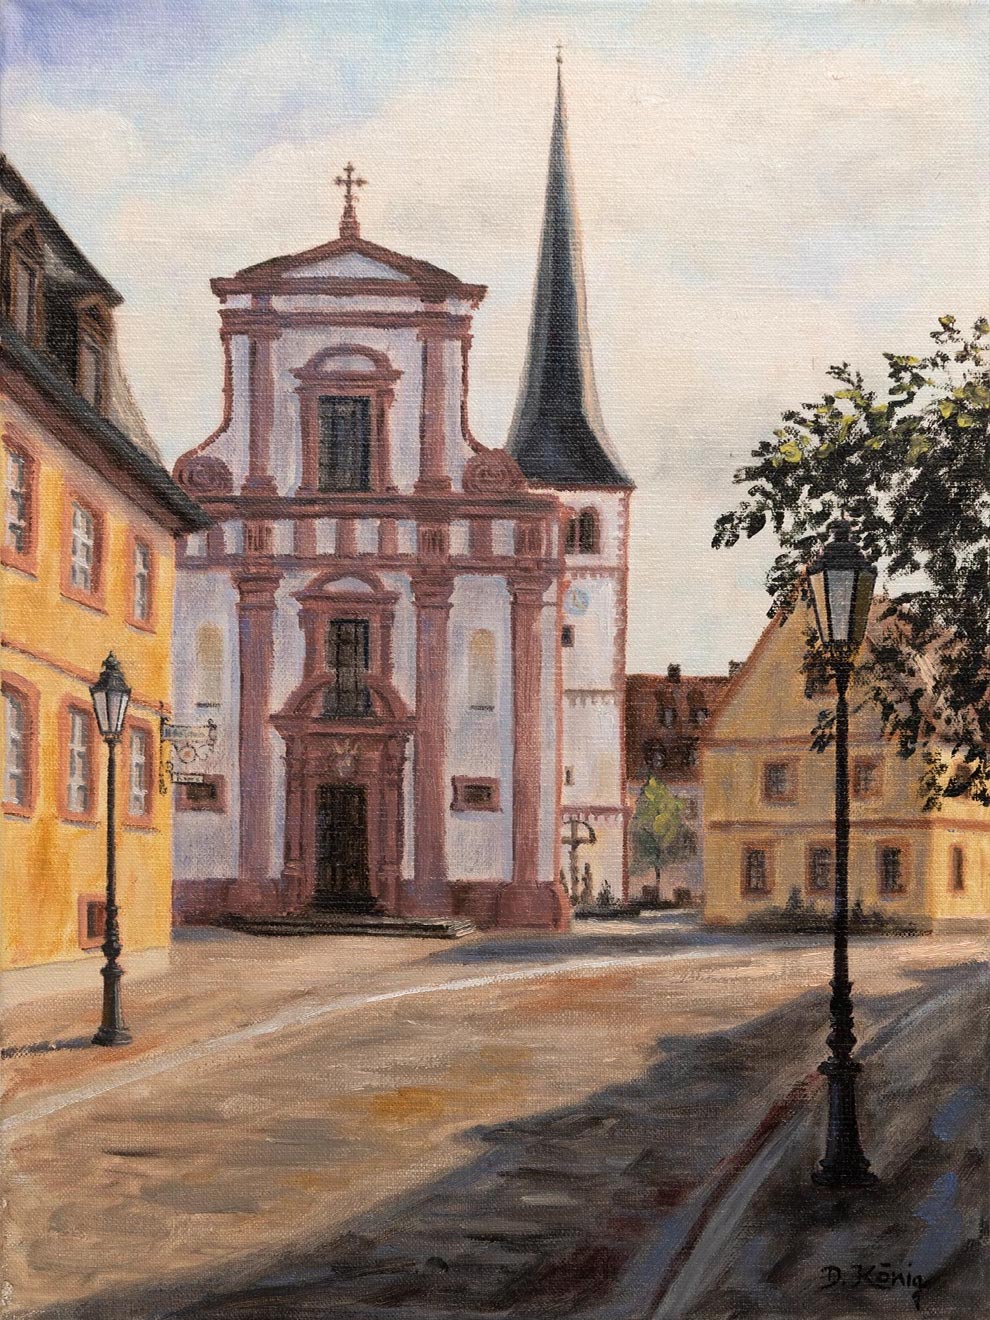 Veitshöchheim Kirchstrasse Mit Pfarrkirche St. Vitus - 30 X 40 Cm - Öl Auf Leinen